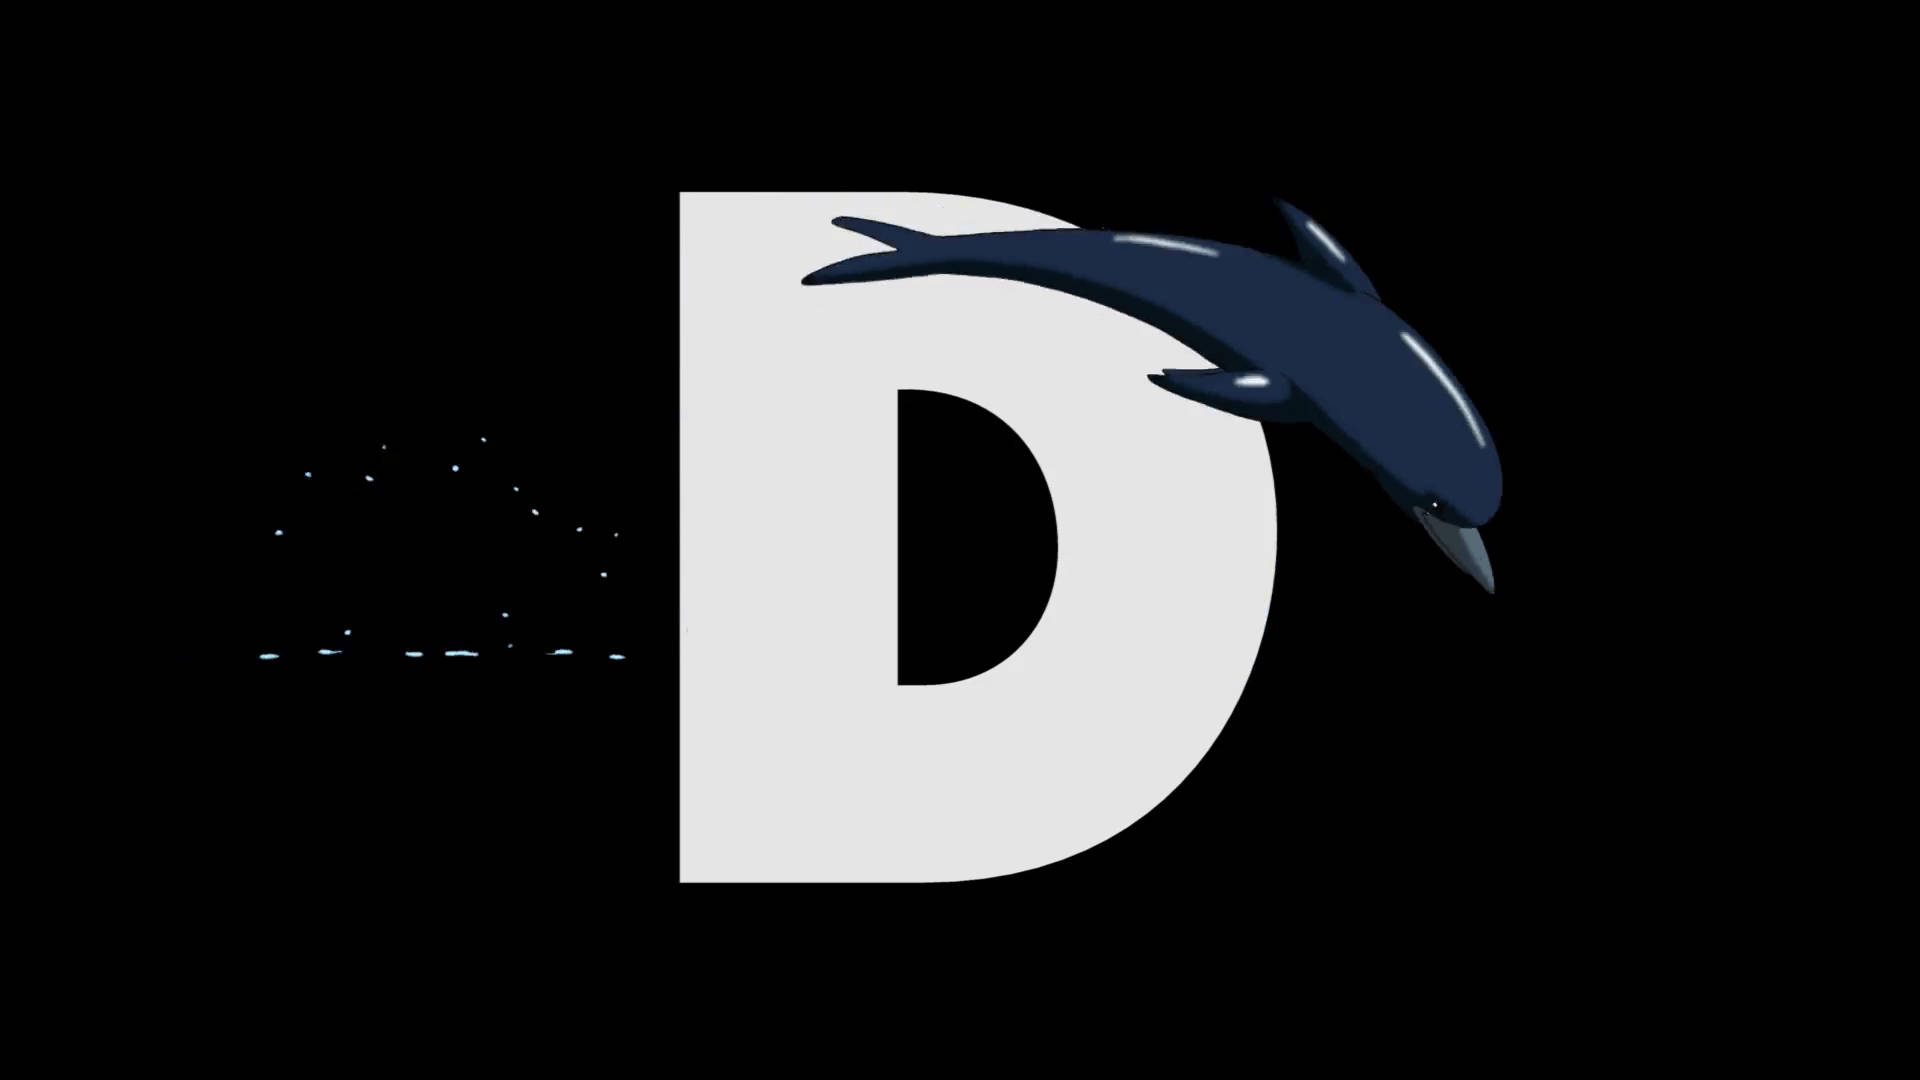 Dolphin Letter D Wallpaper